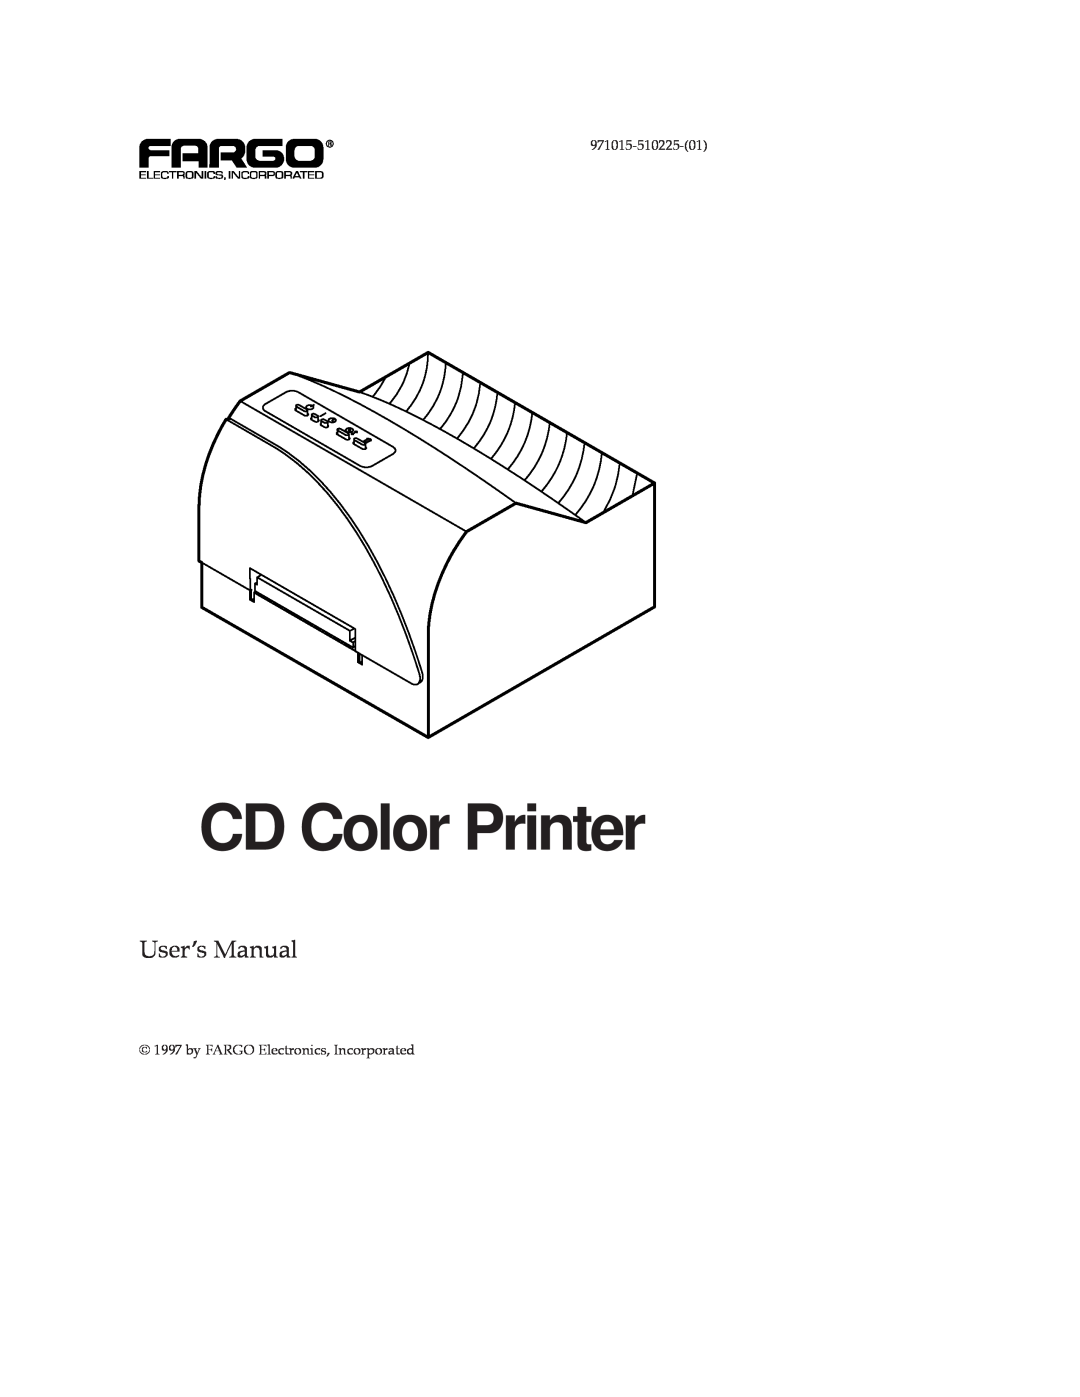 FARGO electronic CD Color Printer manual UserÕs Manual, 971015-510225-01, by FARGO Electronics, Incorporated 